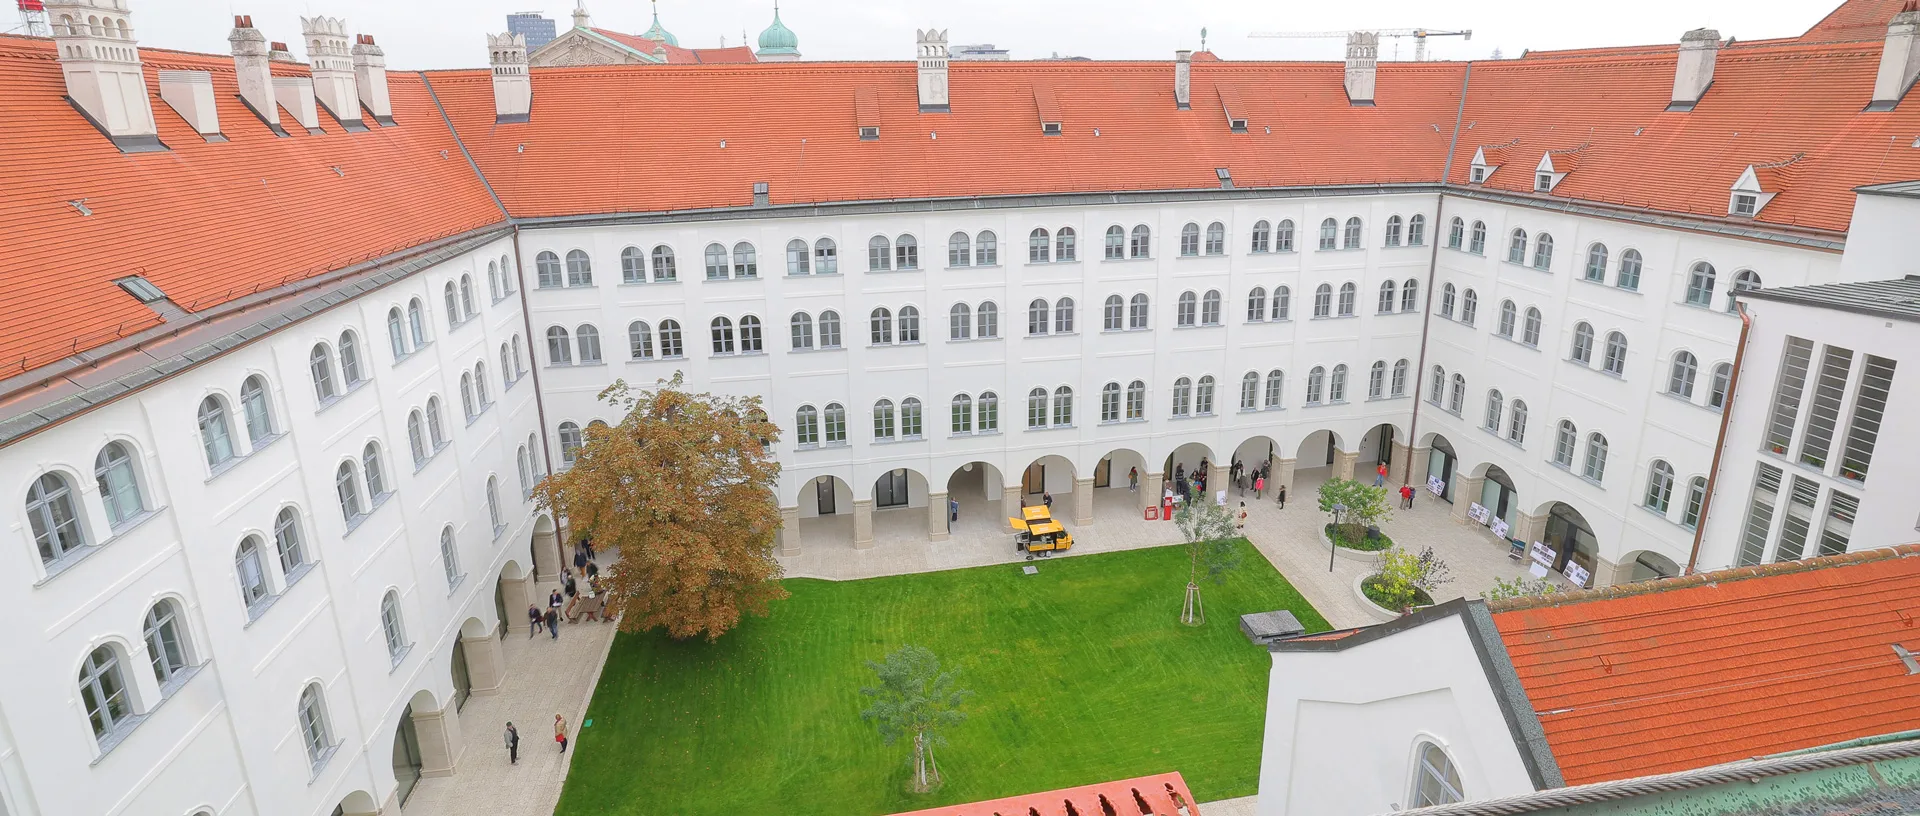 Ansicht des begrünten Hofes im Campus Akademie aus der Vogelperspektive